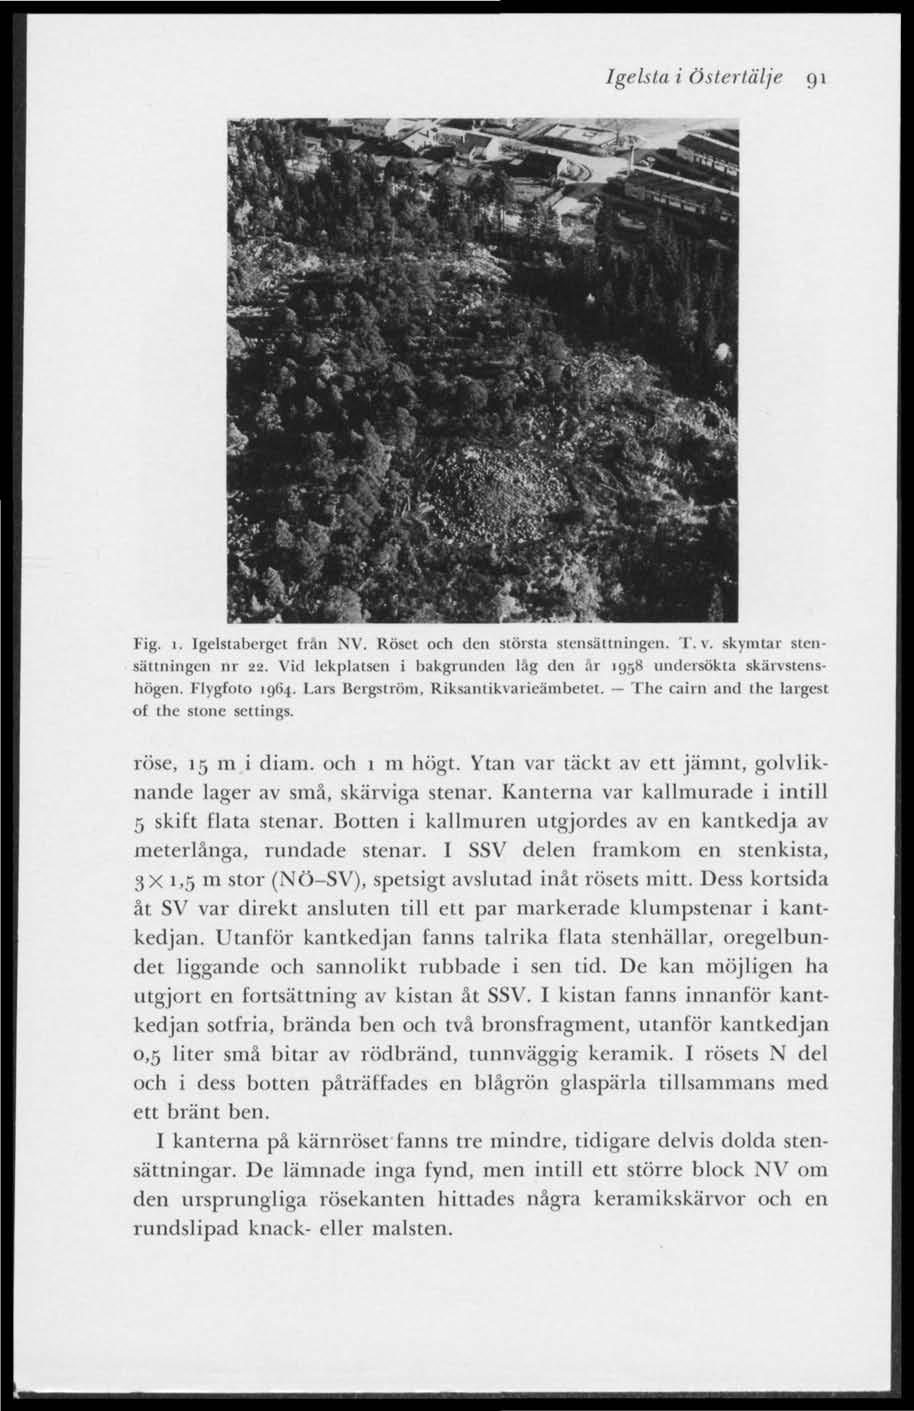 Igelsta i Östertälje 91 Fig. i. Igclstaberget frän NV. Roset och den största stensättningen. T.V, skymtar stensamlingen nr 22. Vid lekplatsen i bakgrunden låg den är 1958 undersökta skärvstcnshögen.